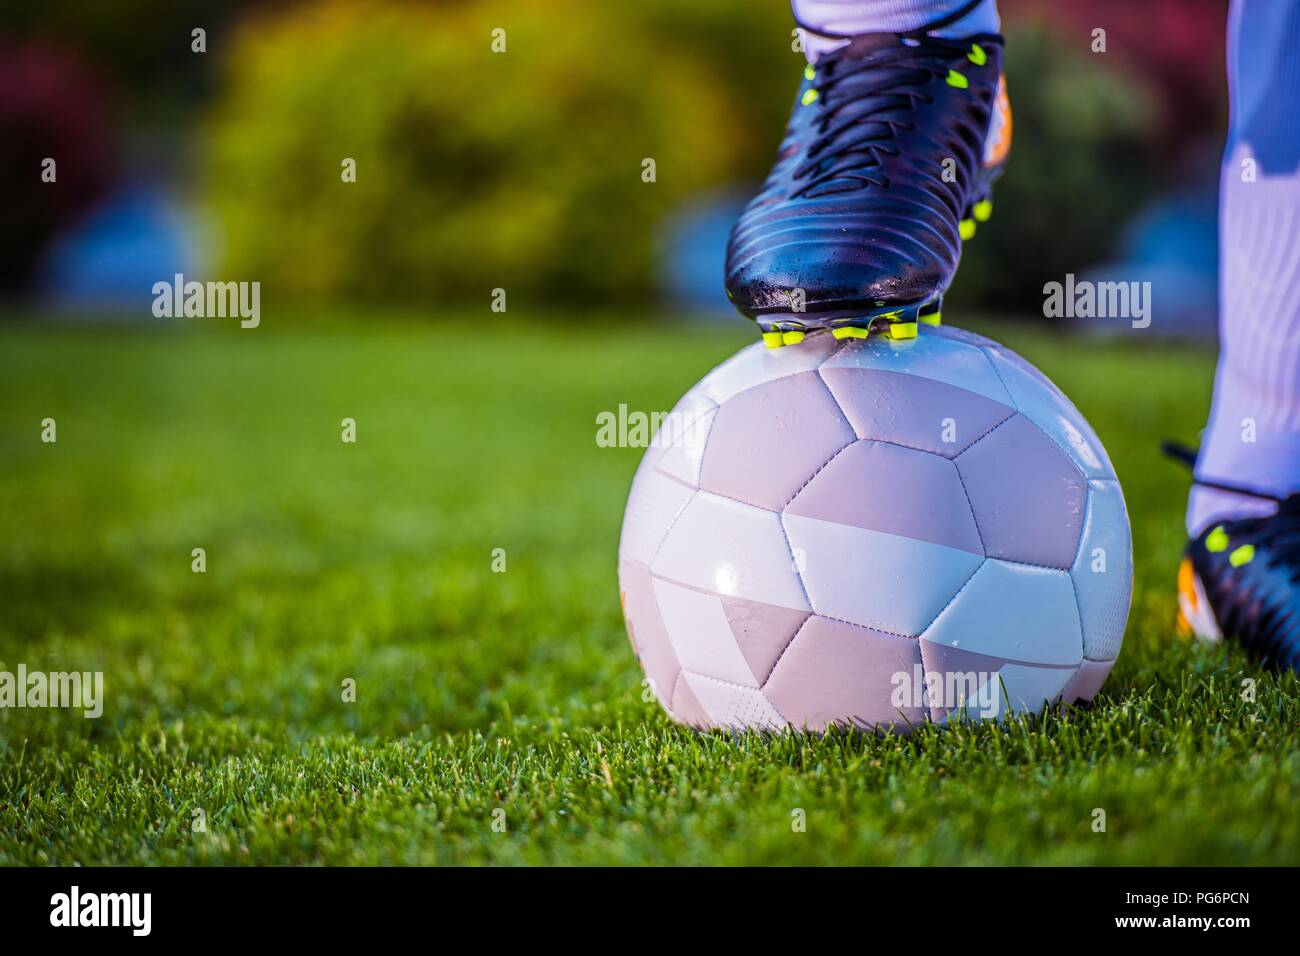 Fußball-Fußball-Spieler halten Steckvorrichtung an der Kugel. Closeup Foto. Fußball-Thema. Stockfoto